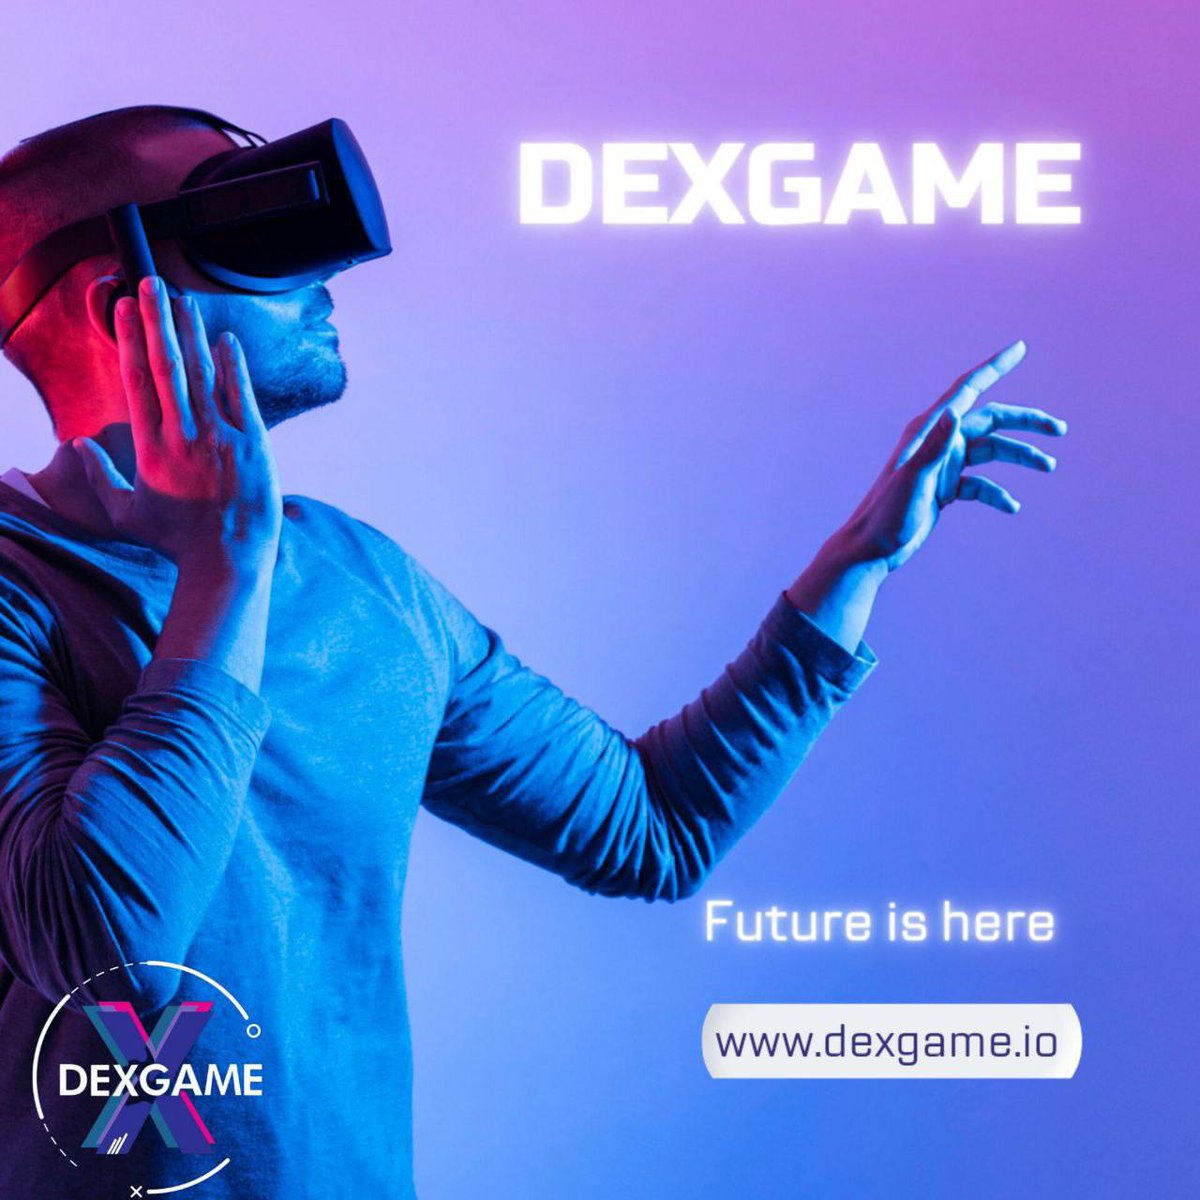 DEXGame, blokzincir teknolojileri, merkeziyetsiz finans, NFT ve dijital oyunlar sektörlerine odaklanıyor.
#dexgame 🤫 #dxgm 🌟 #oxro 🤑